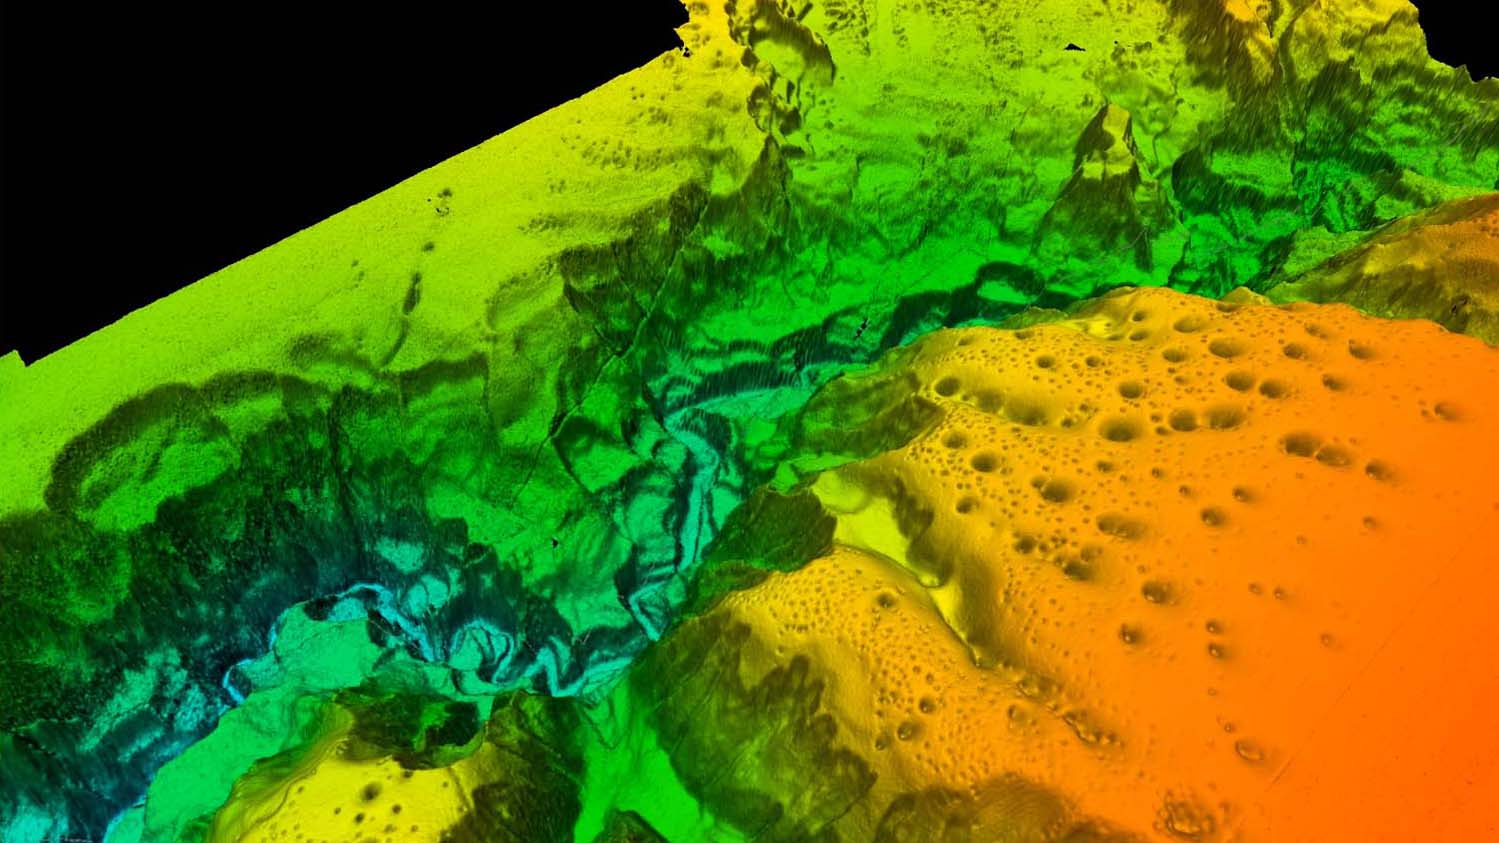 Reconstrucción 3D del fondo marino de Capbreton. Extracto de vídeo. Imagen: IEO